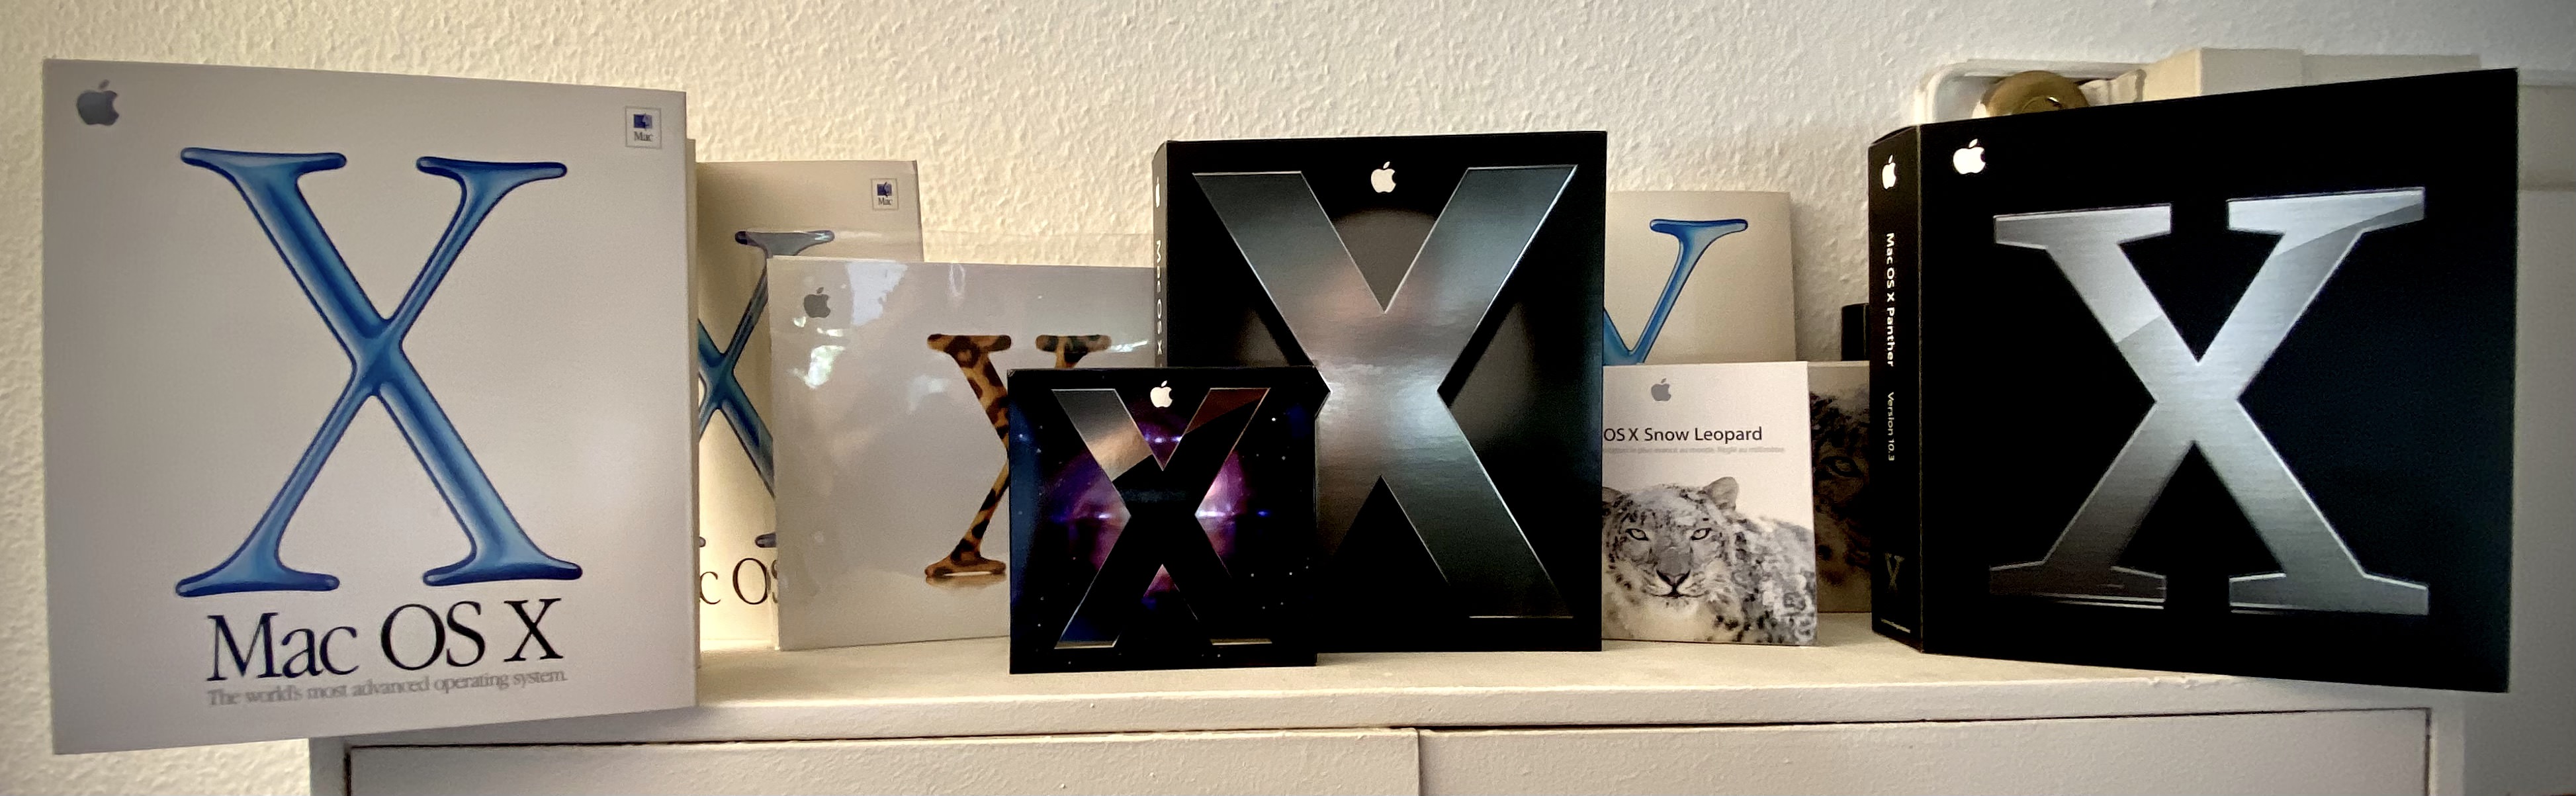 Mac OS X boxes